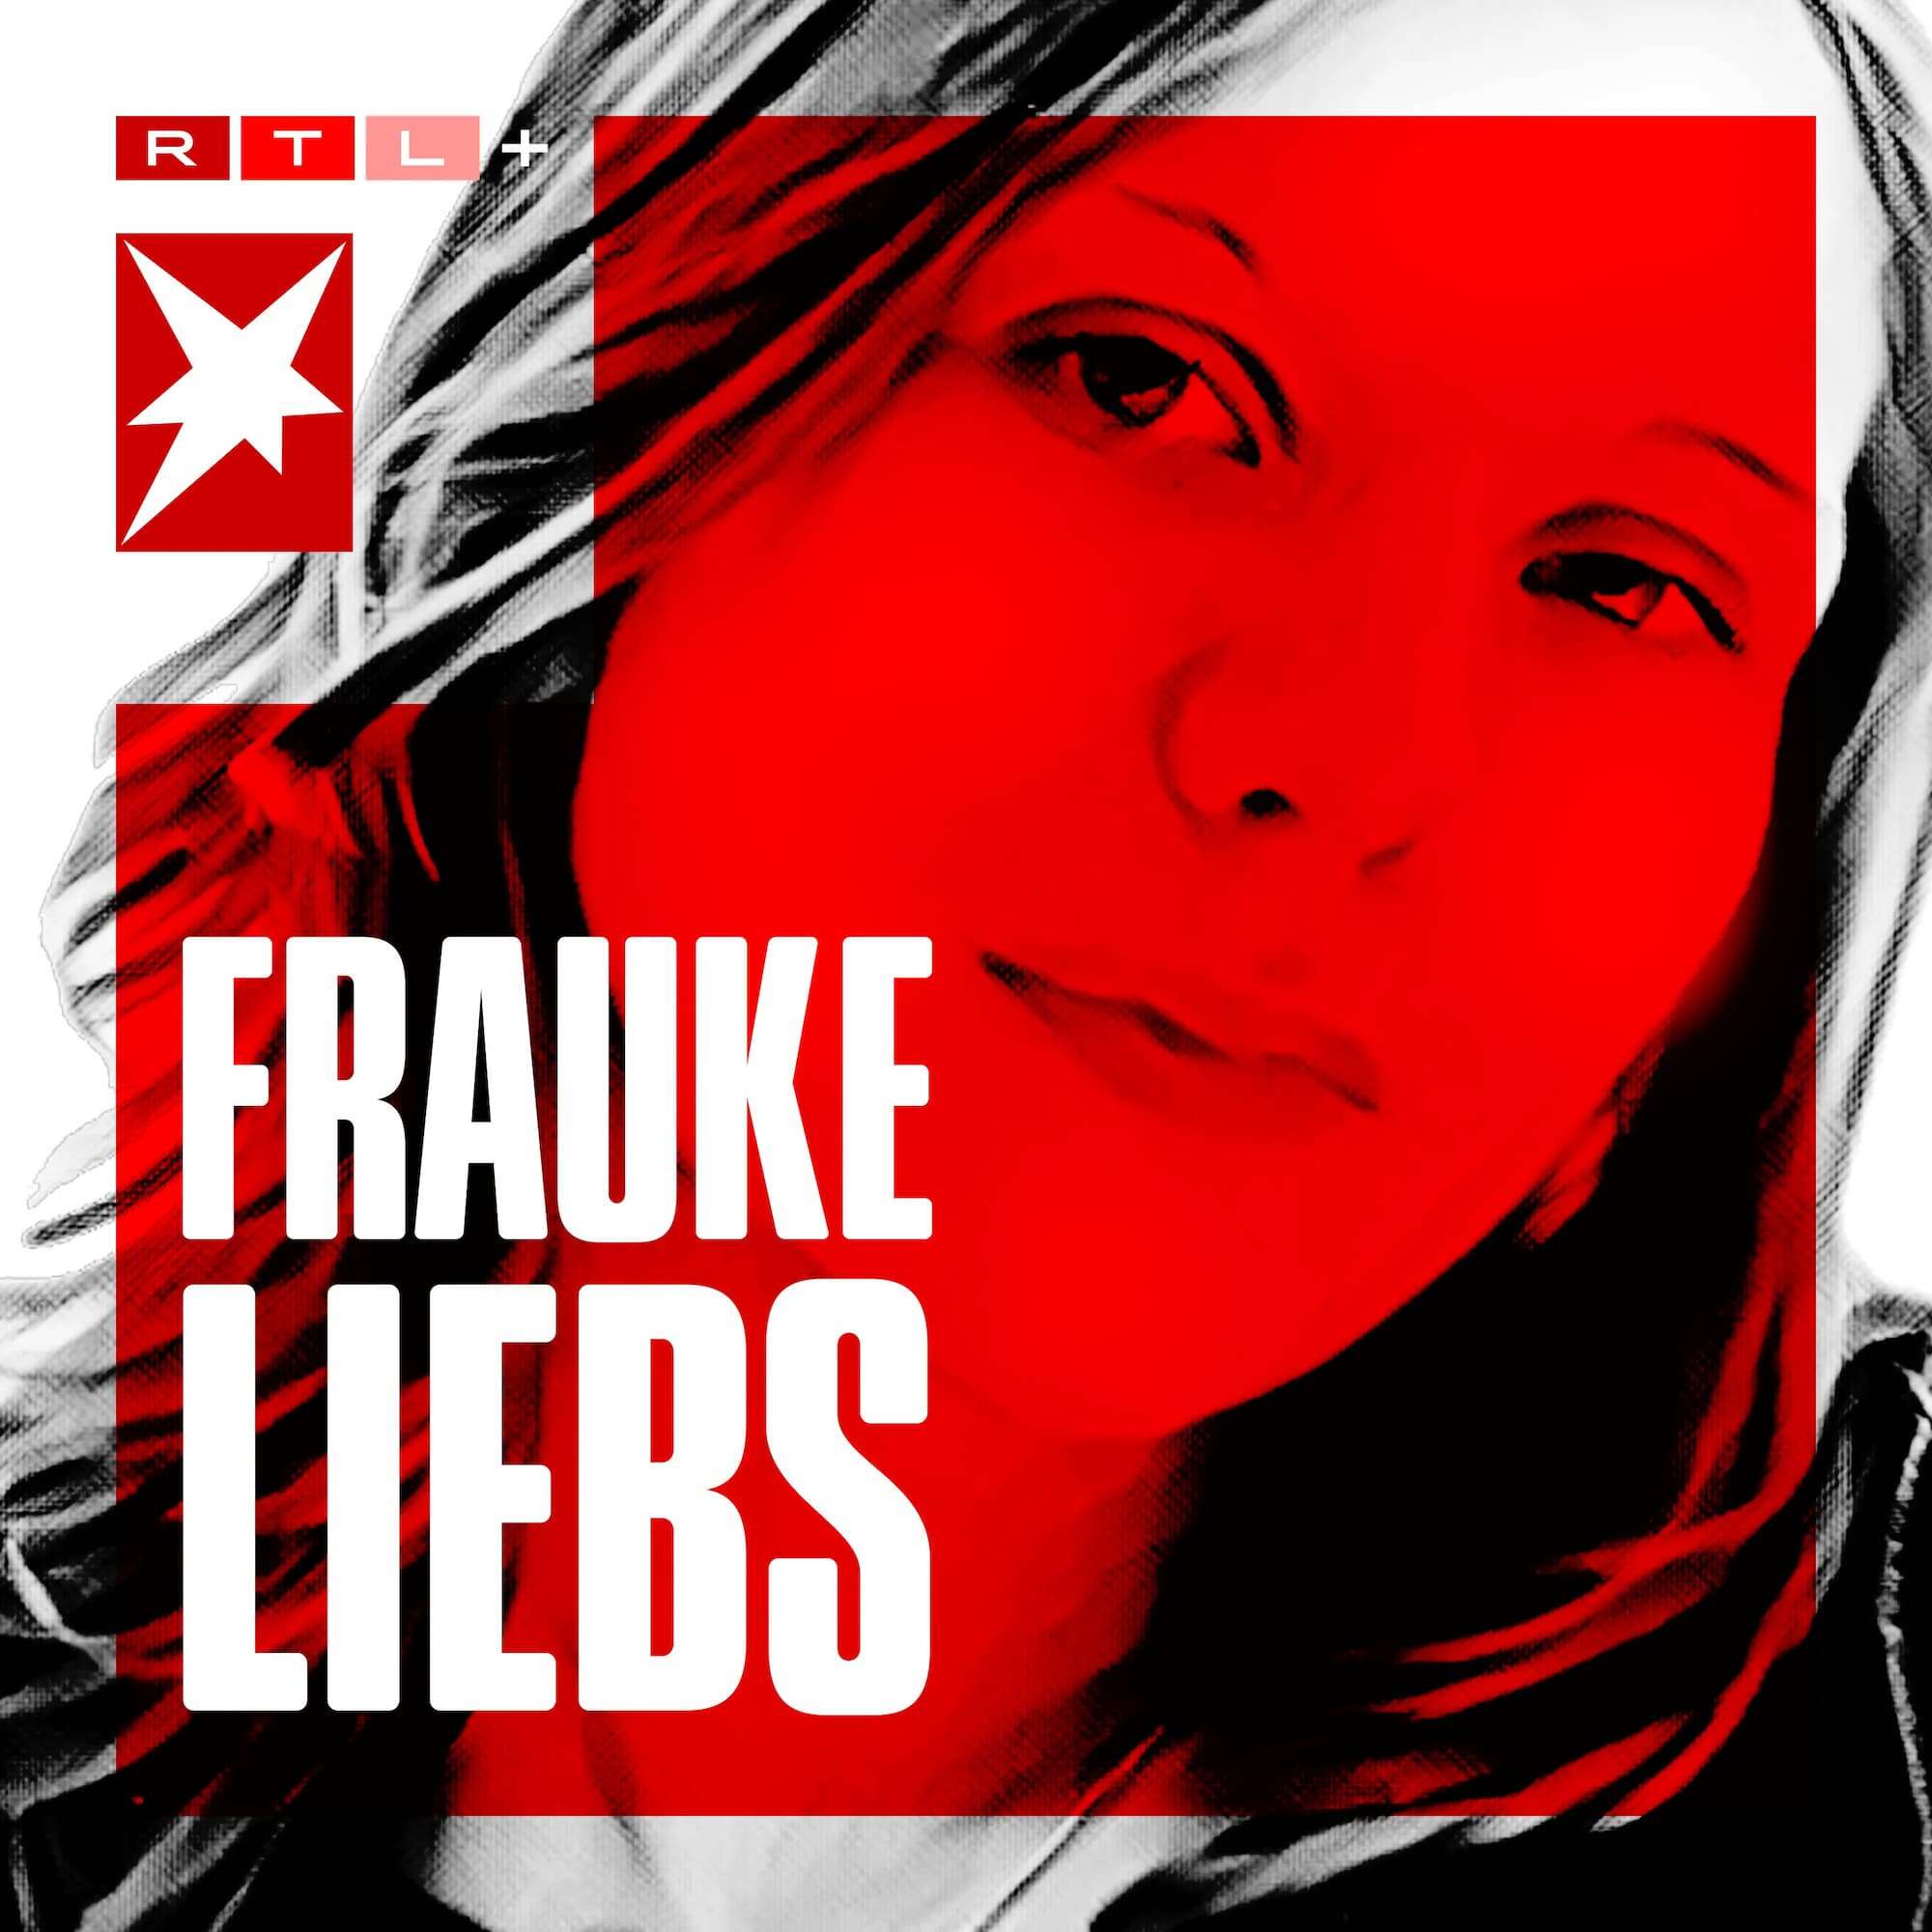 Podcast-Cover "Frauke Liebs - Die Suchen nach dem Mörder"